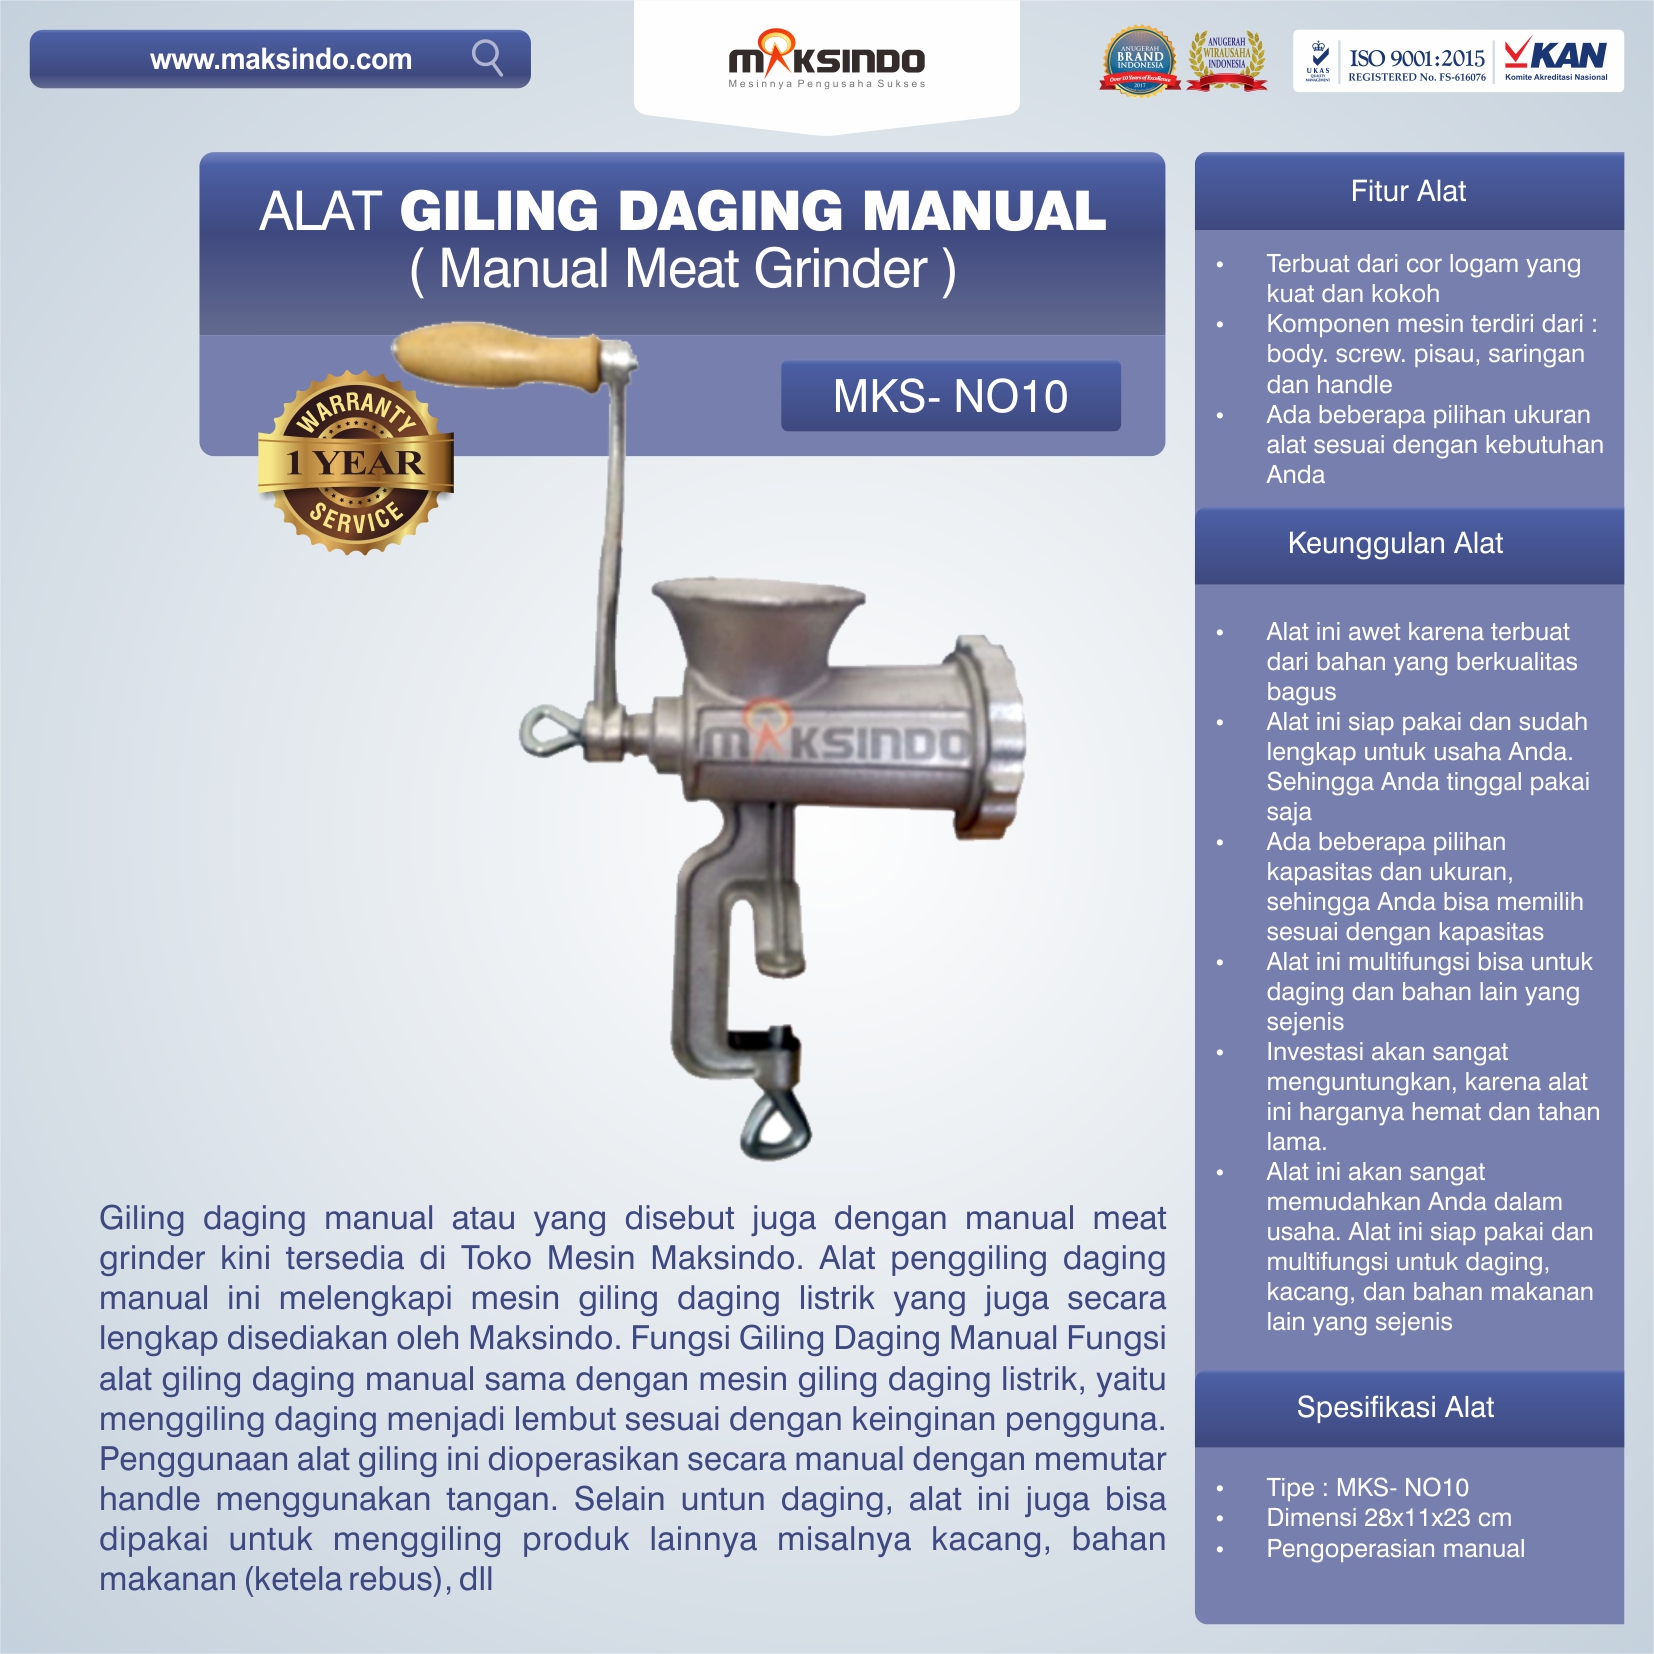 Jual Alat Giling Daging Manual di Palembang